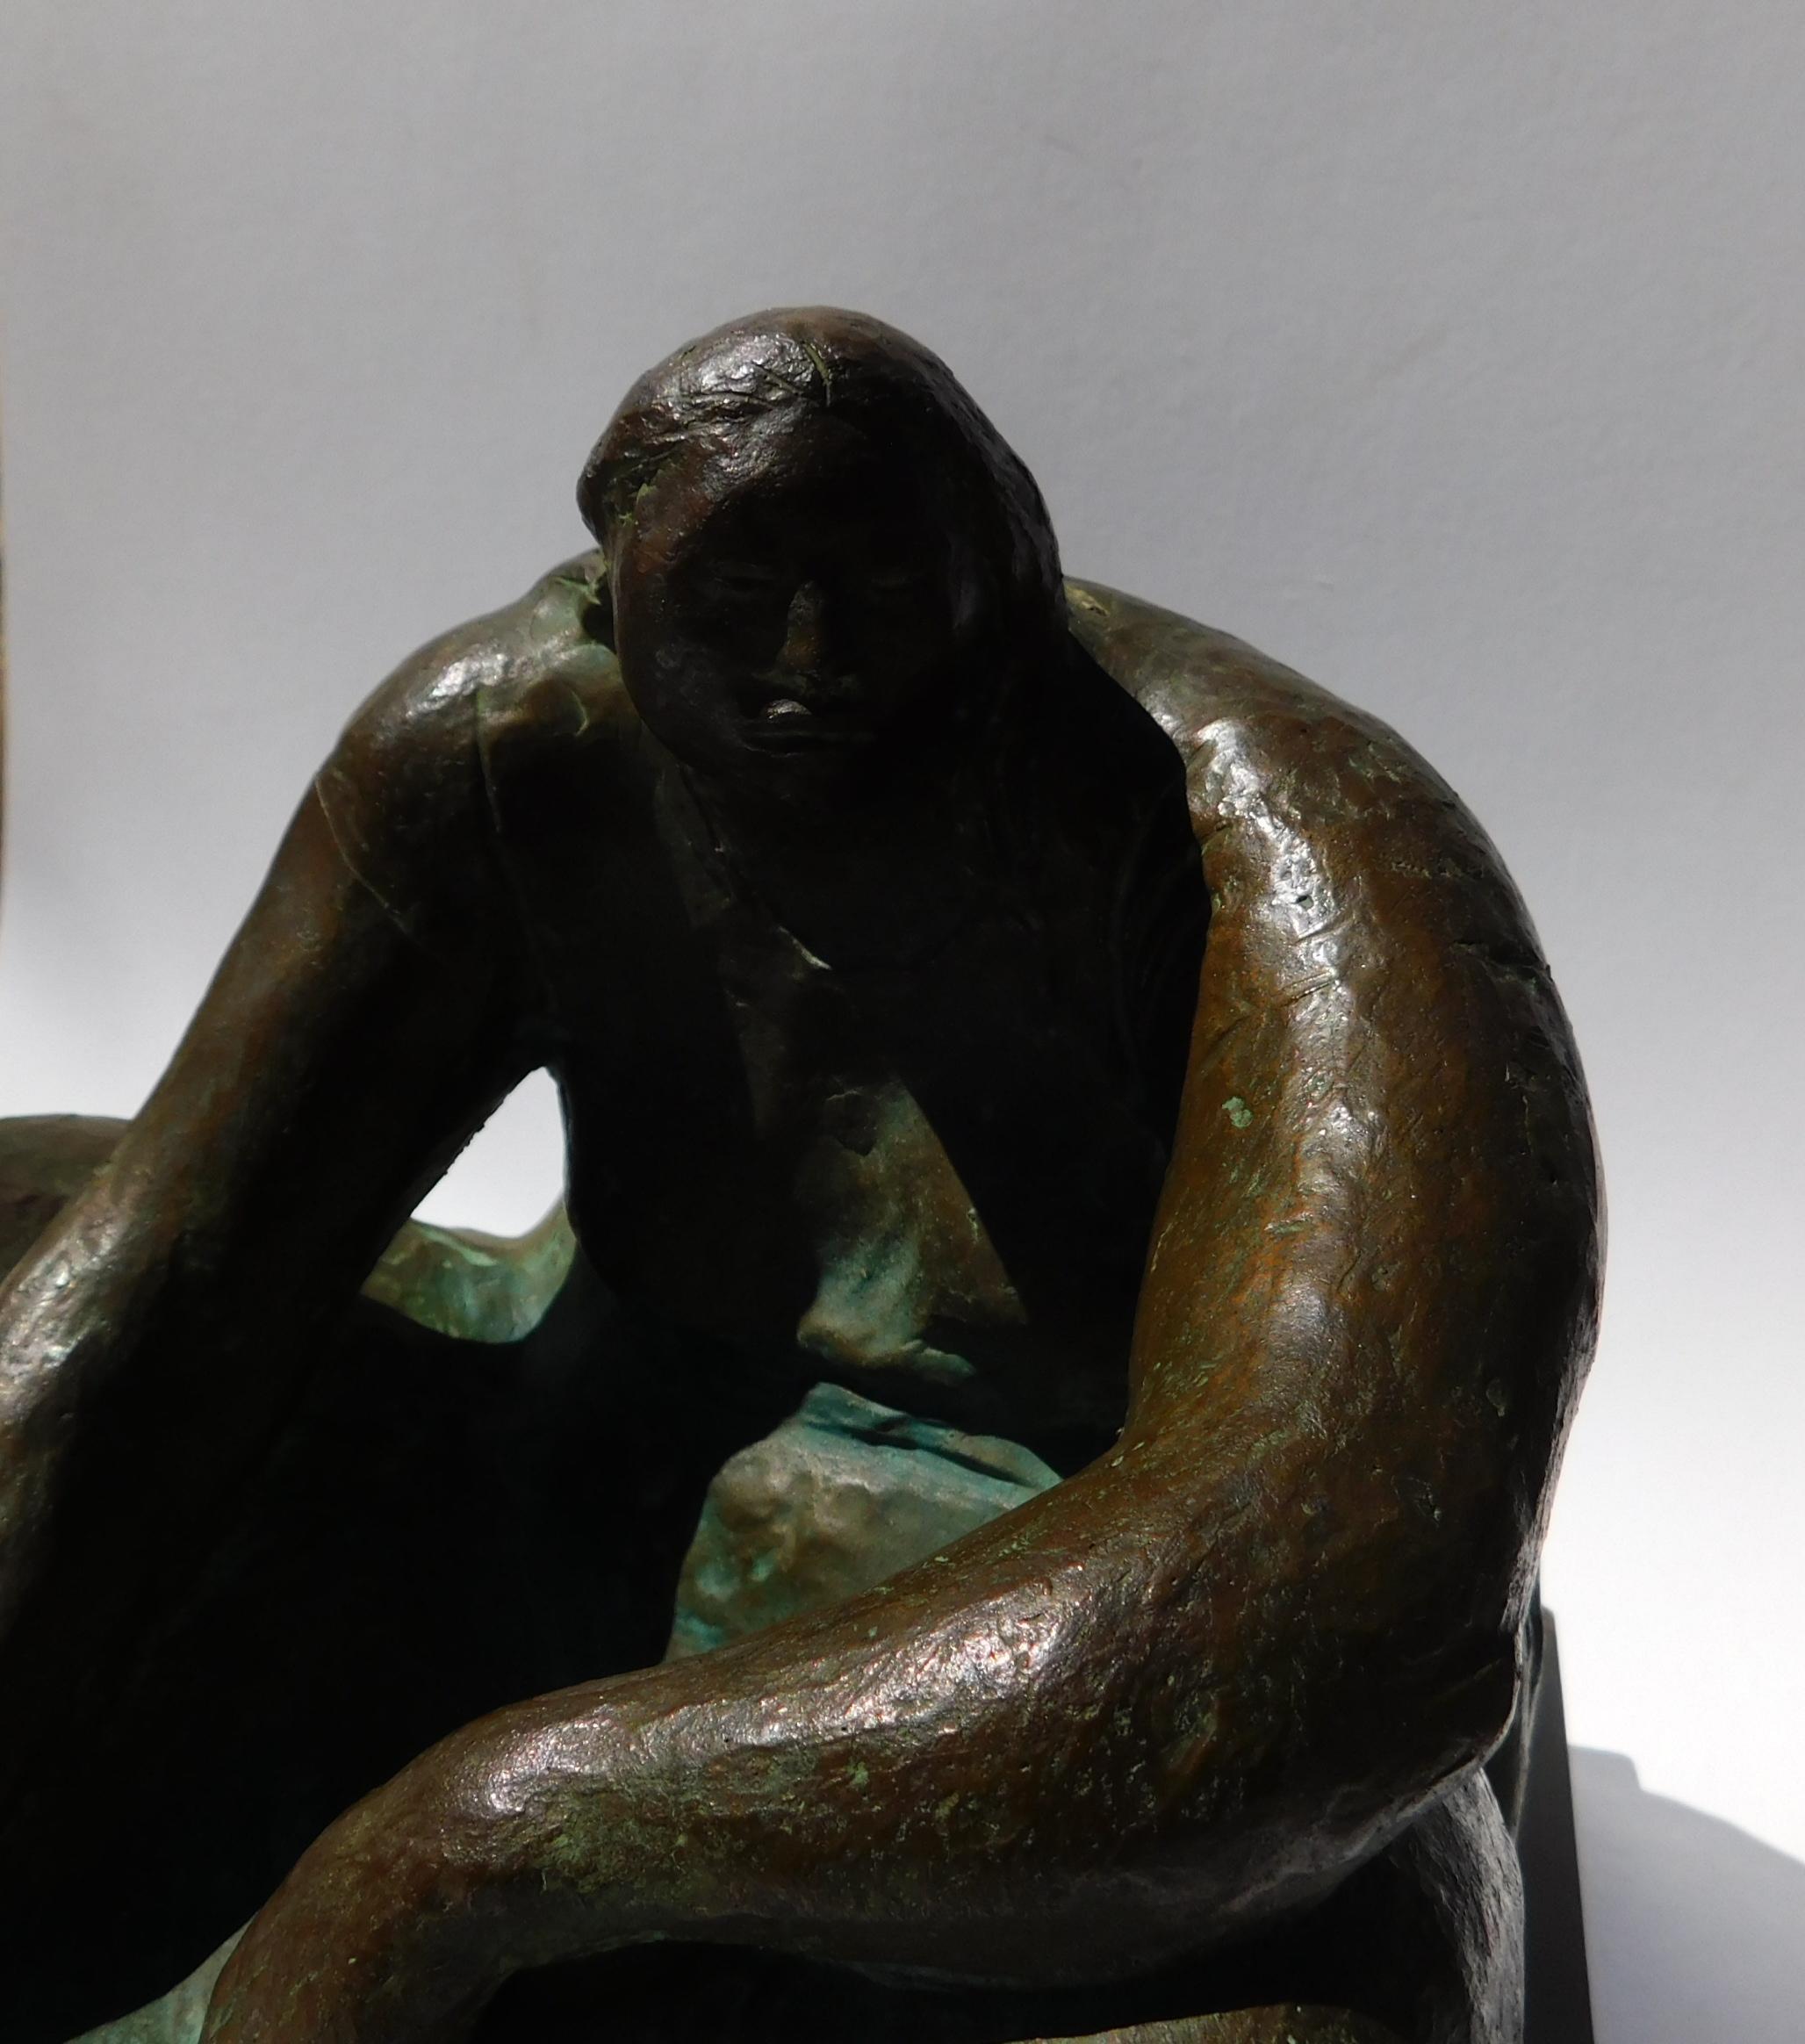 Sculpture en bronze de Francisco Zuniga. Femme assise. Edition : 5. 
#467 dans le catalogue raisonné de Zuniga. Intitulé : 